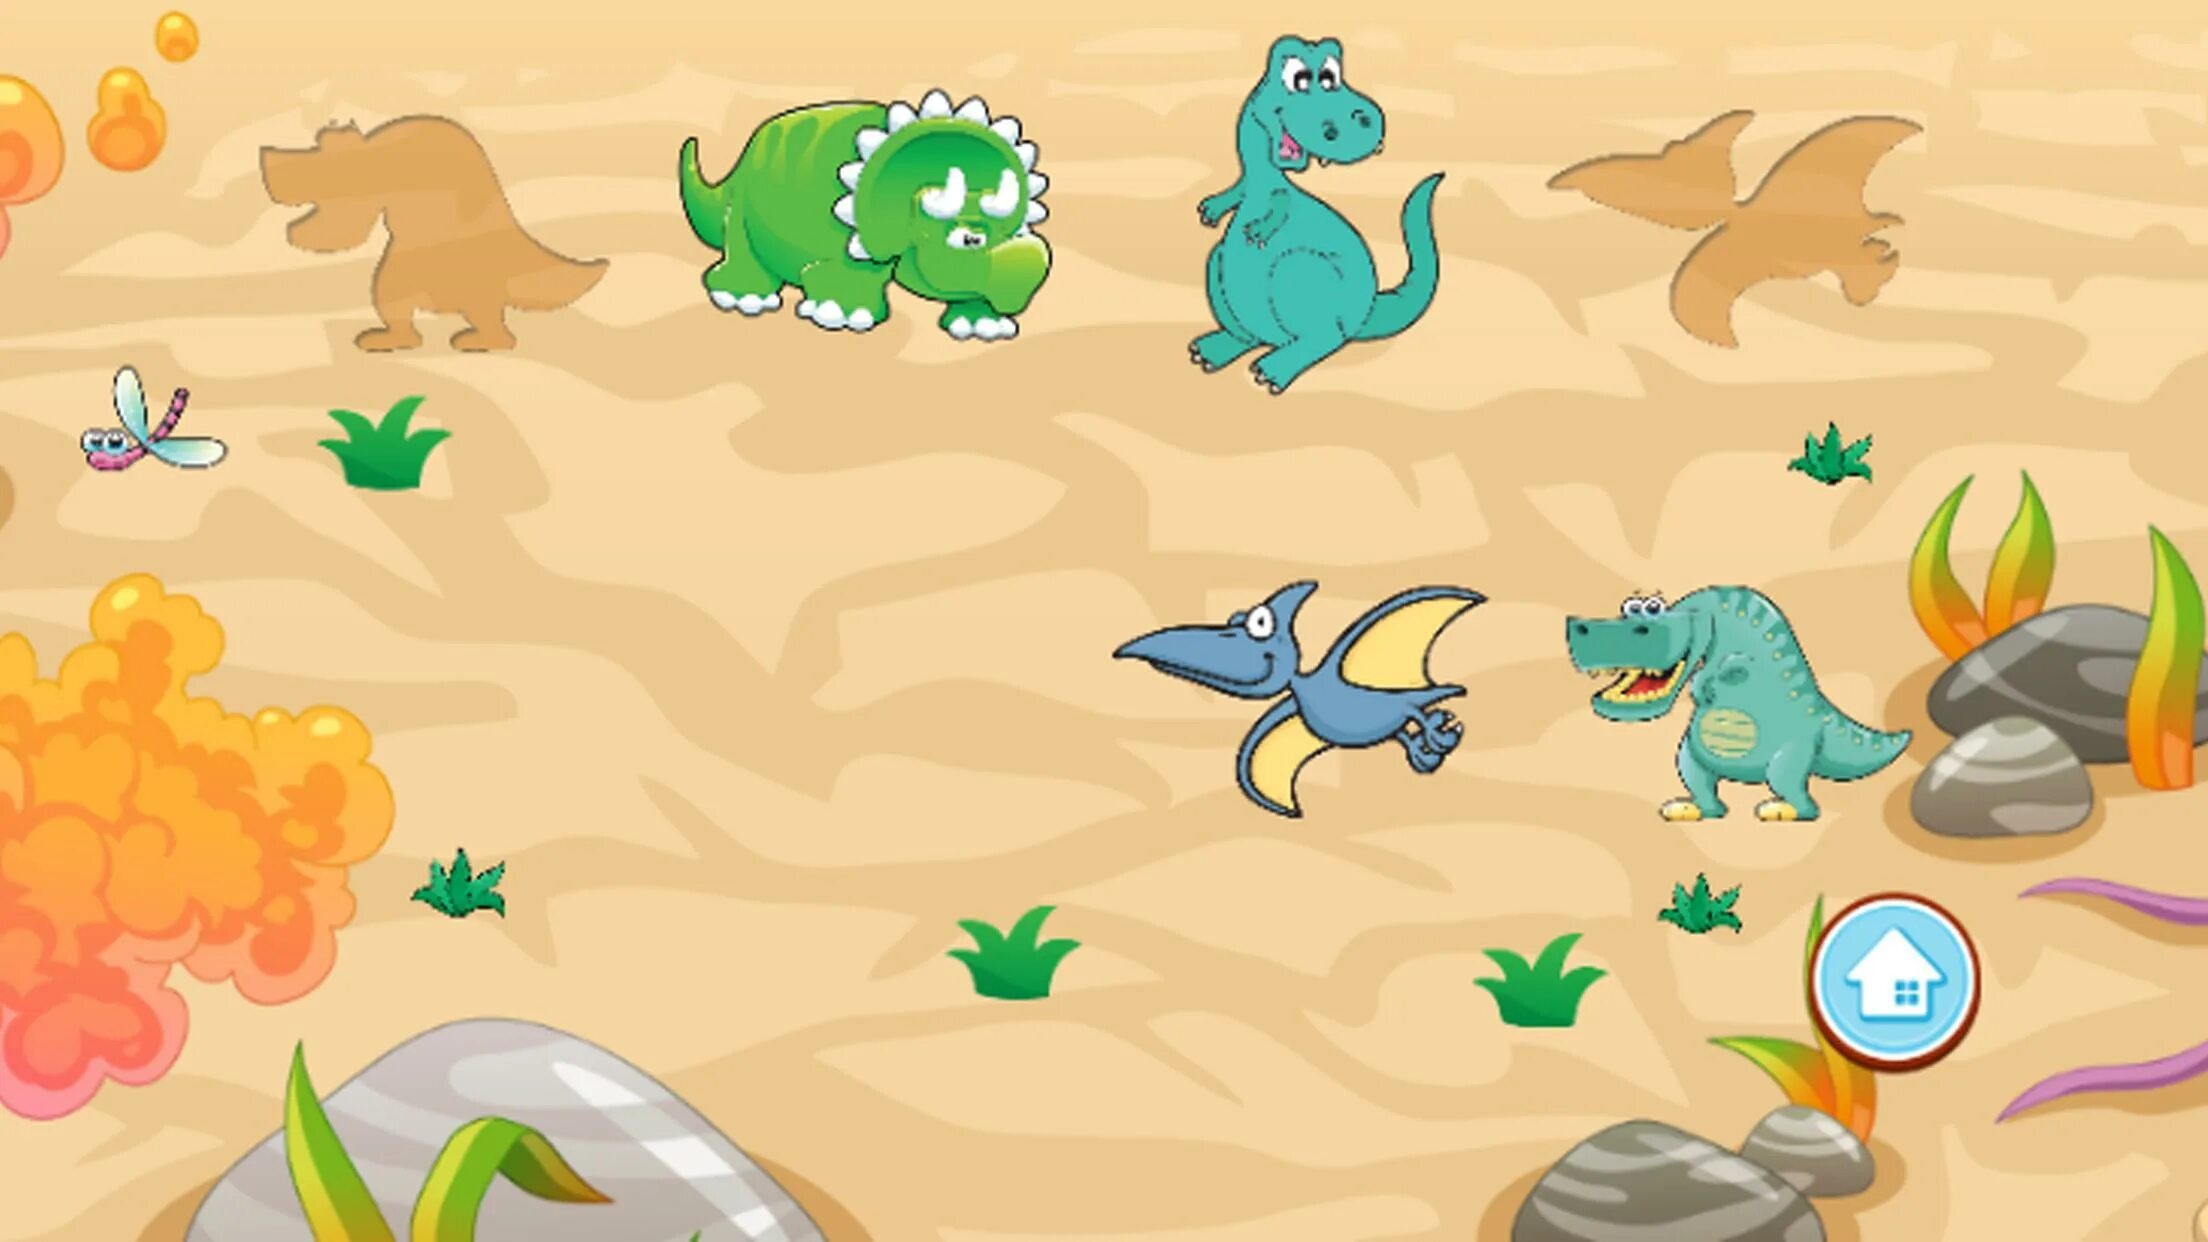 Про динозавров для детей 3 лет. Игра Динозаврики игра Динозаврики игра Динозаврики игра Динозаврики. Развивающие игры динозавры. Головоломки с динозаврами. Игры с динозавриками для малышей.